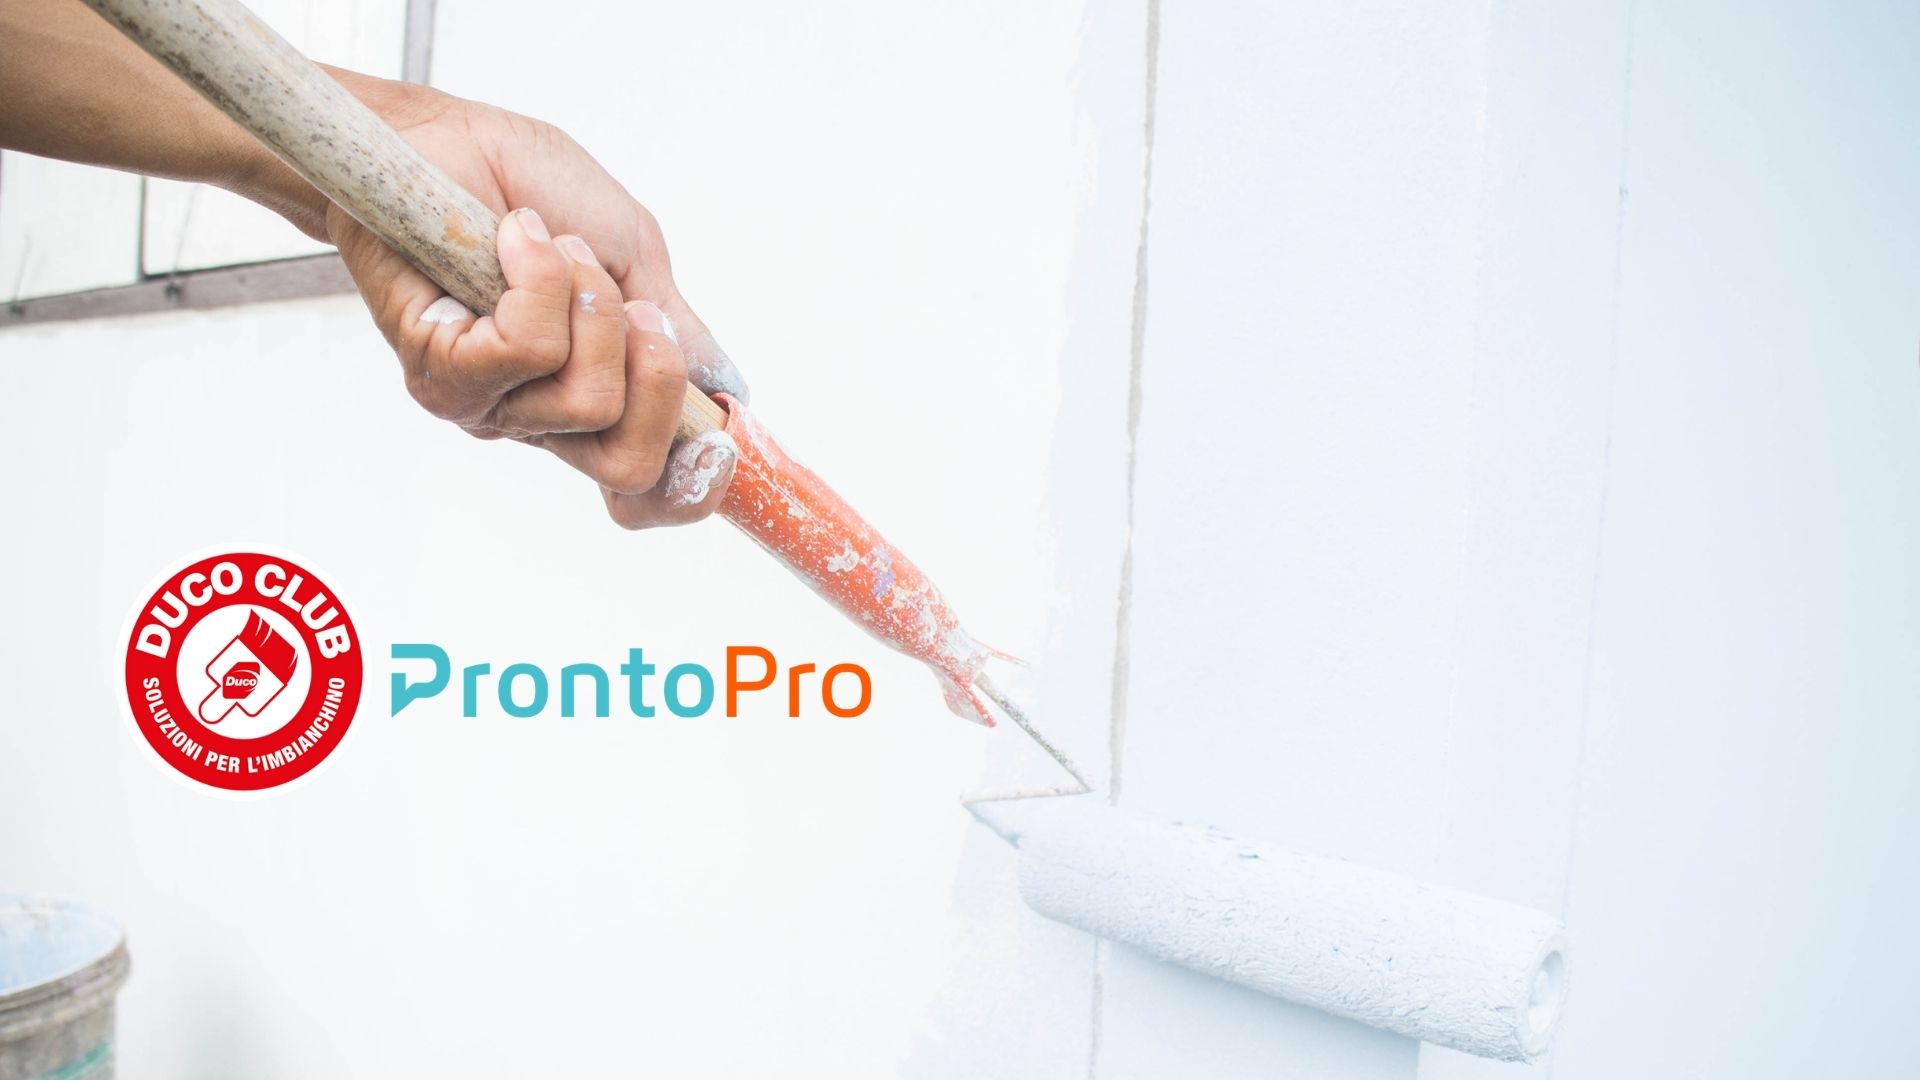 Duco e ProntoPro: i vantaggi della nuova partnership